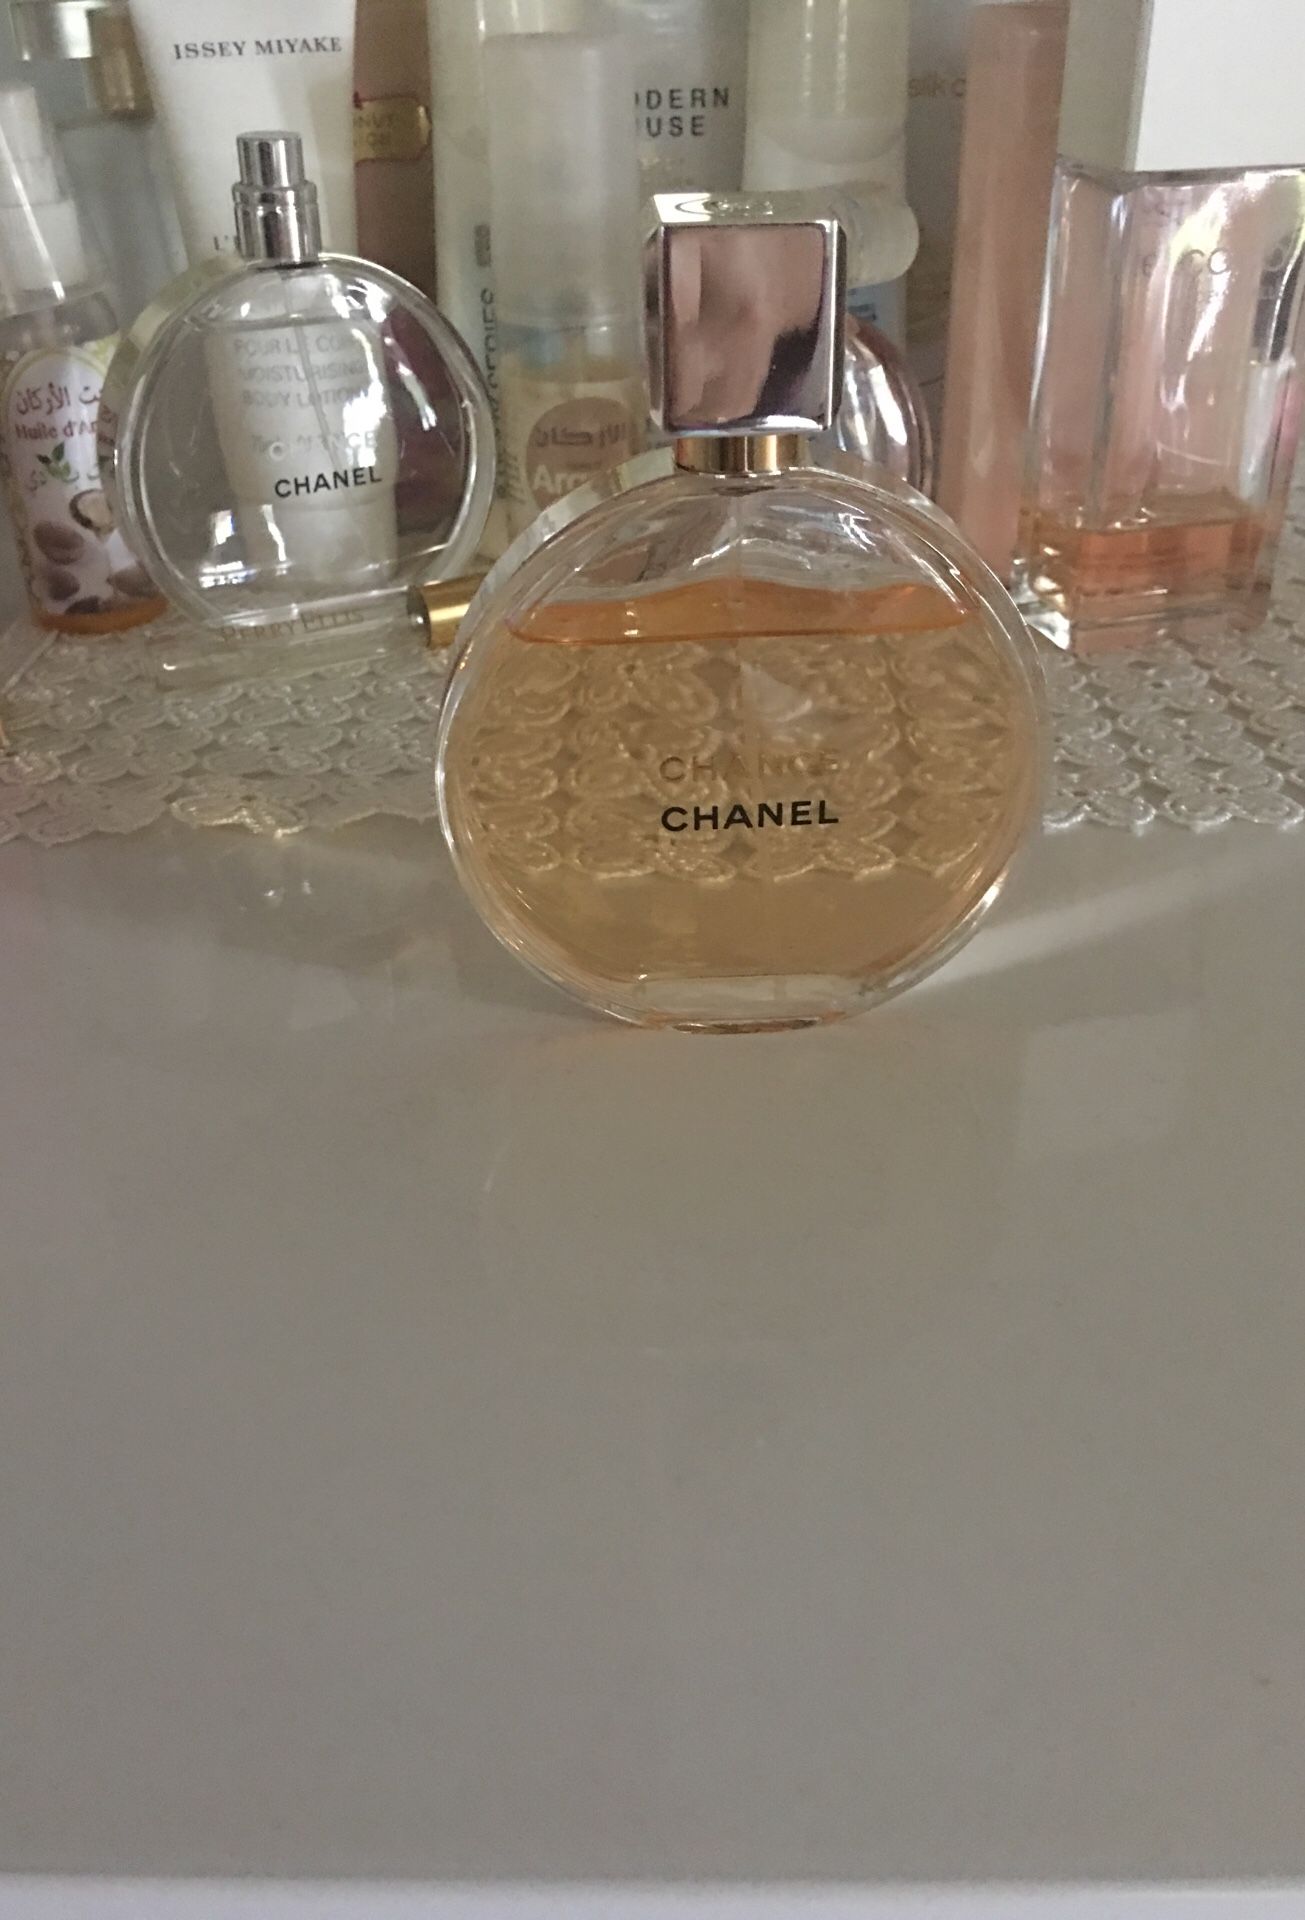 Real Chanel perfume